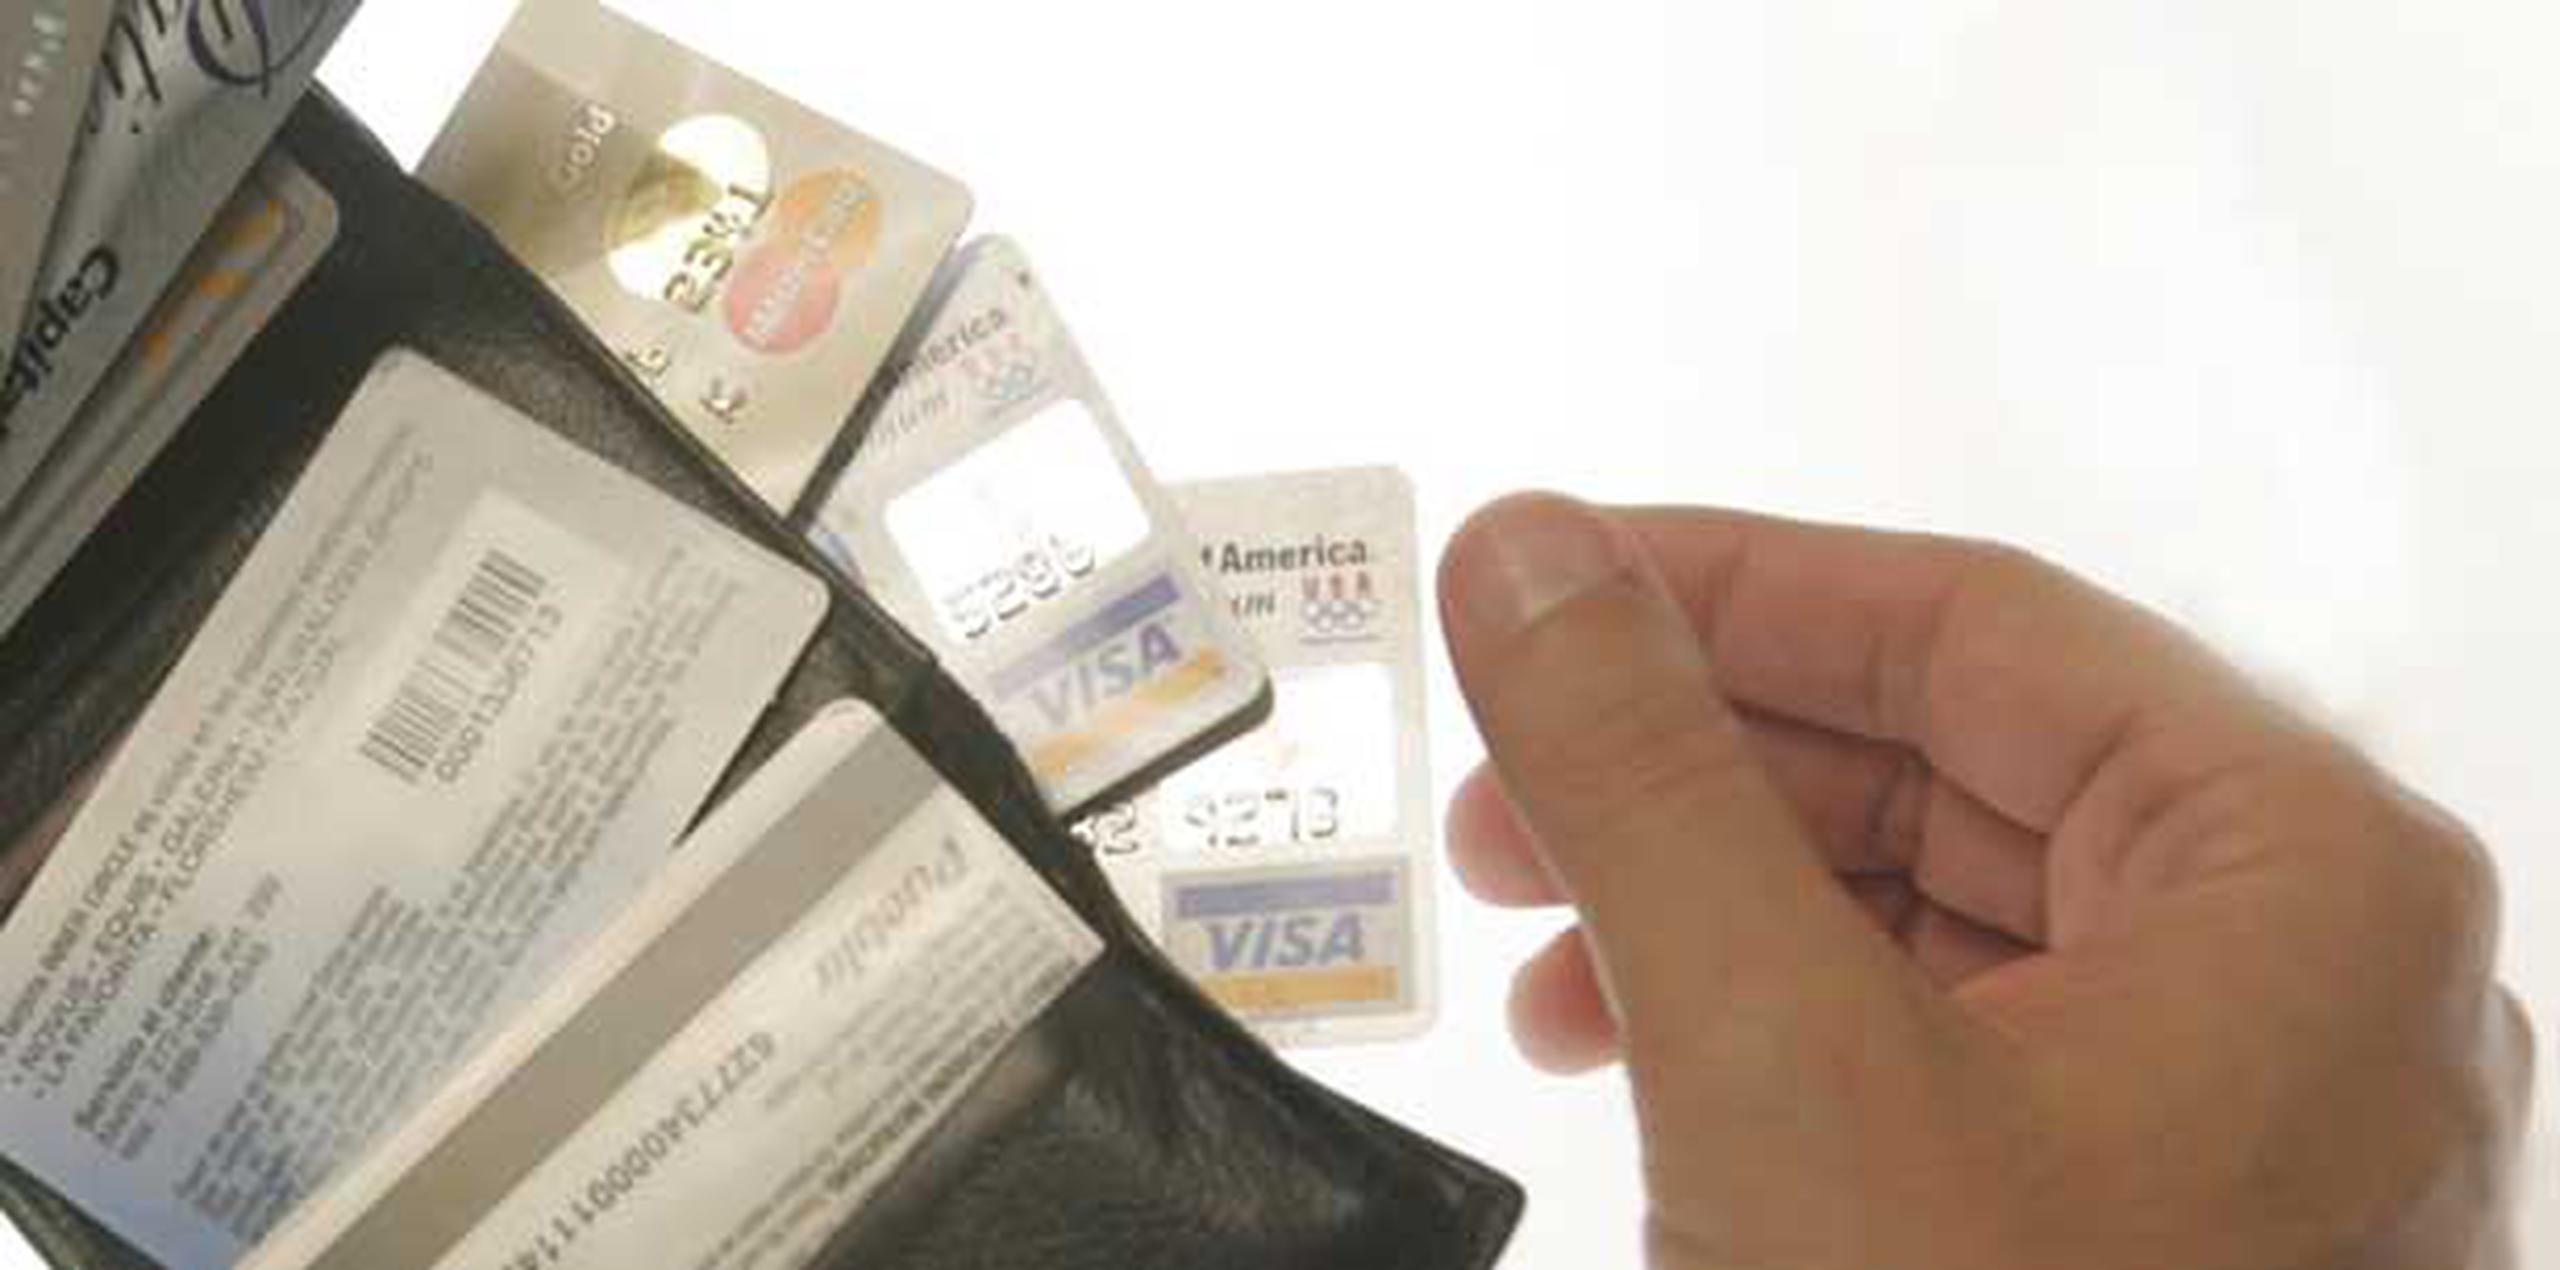 Según la acusación, el imputado usaba tarjetas de crédito fraudulentas para pagar sus gastos en hoteles y comprar artículos de lujo, como carteras de diseñadores. (Archivo)